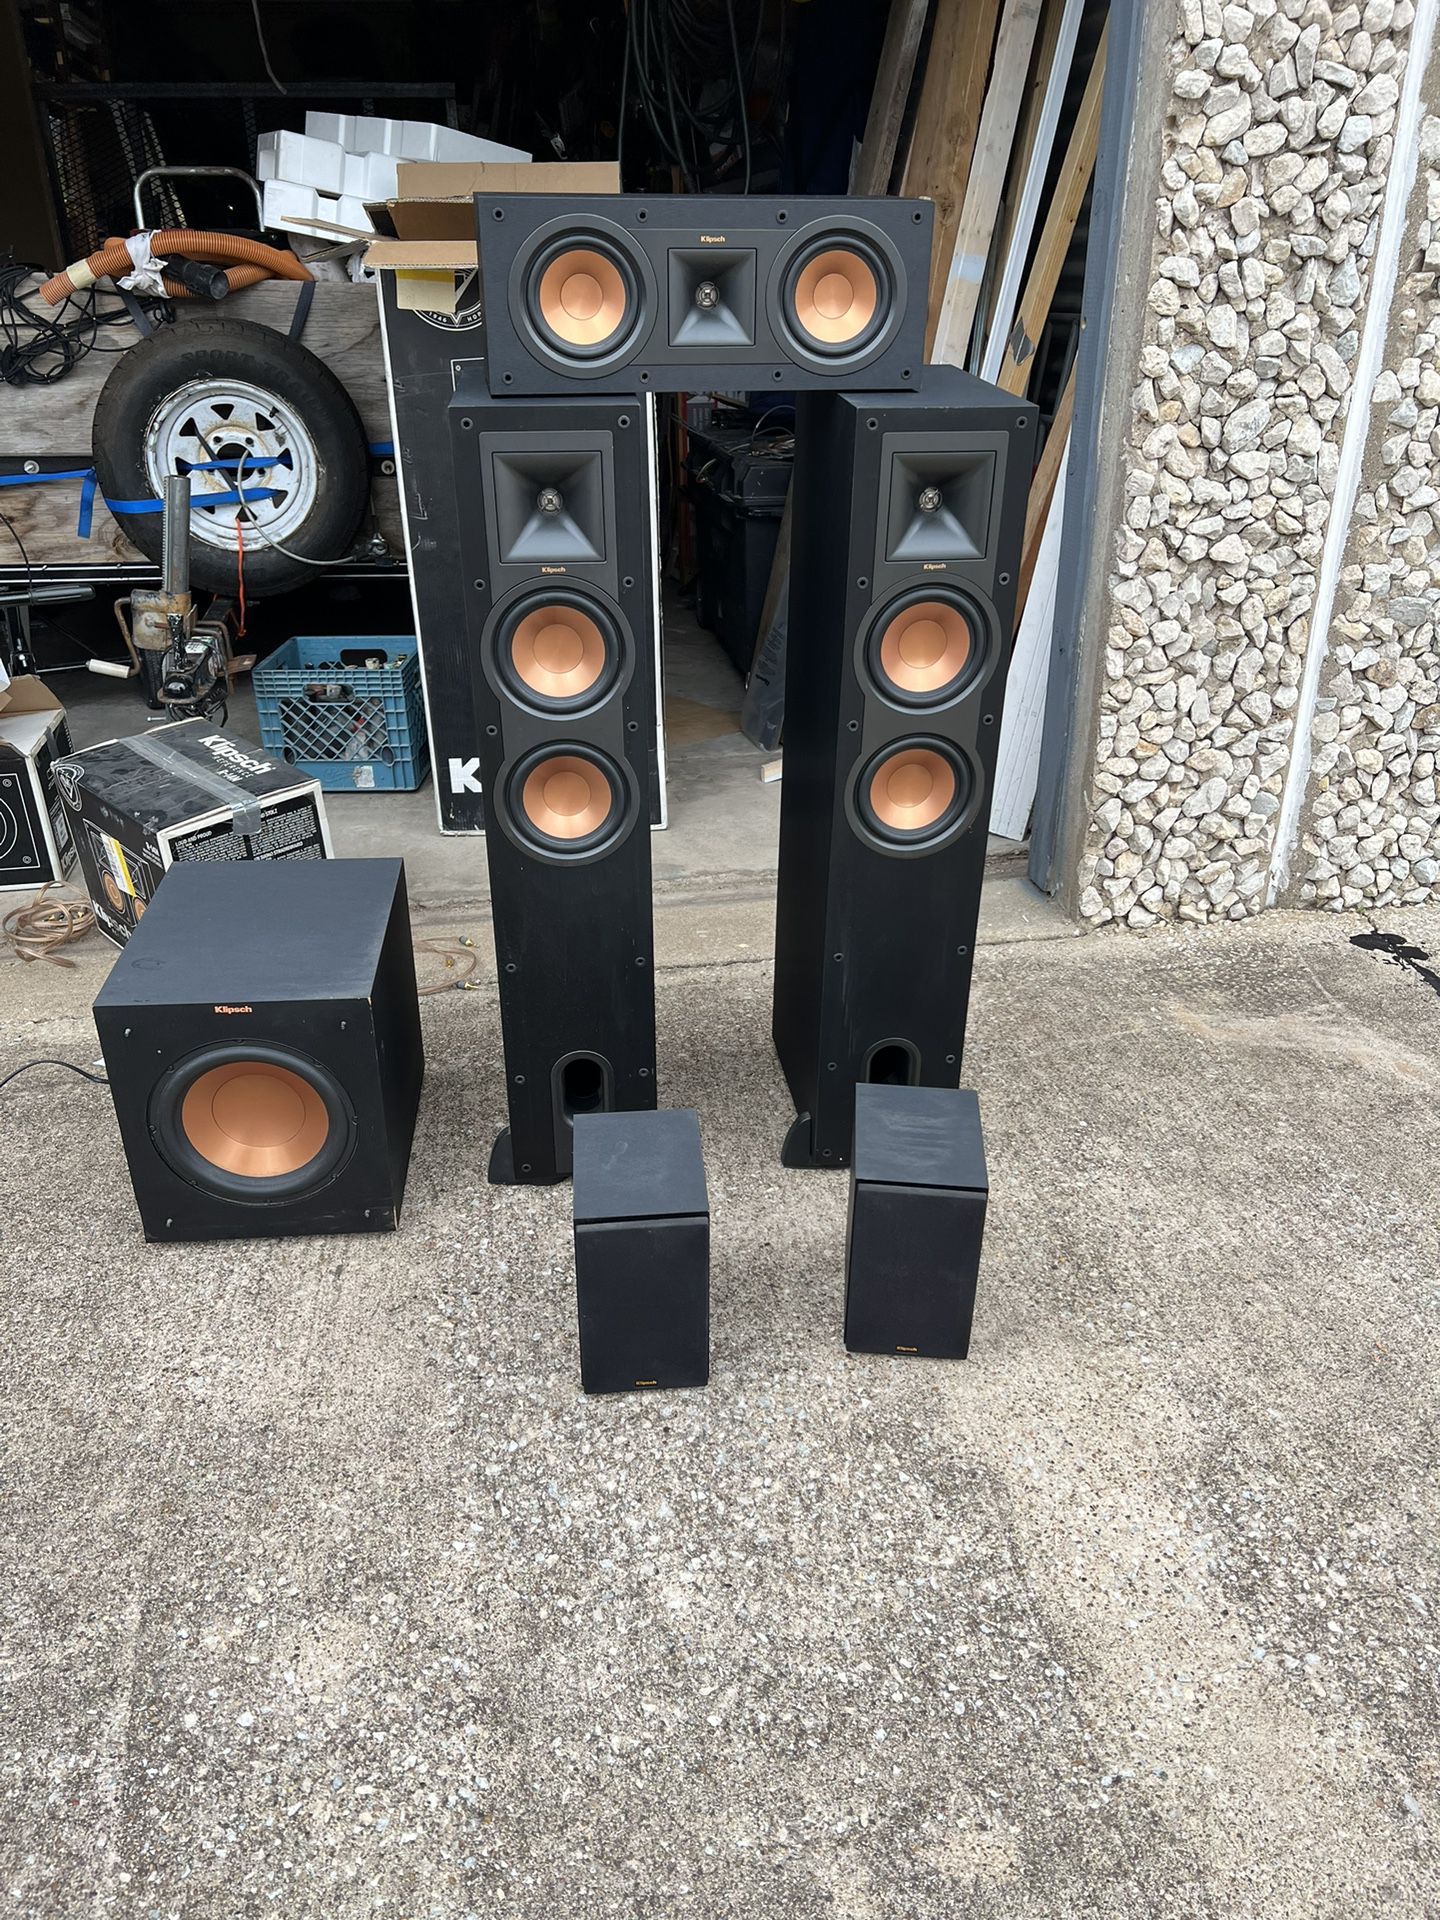 Klipsch Speakers